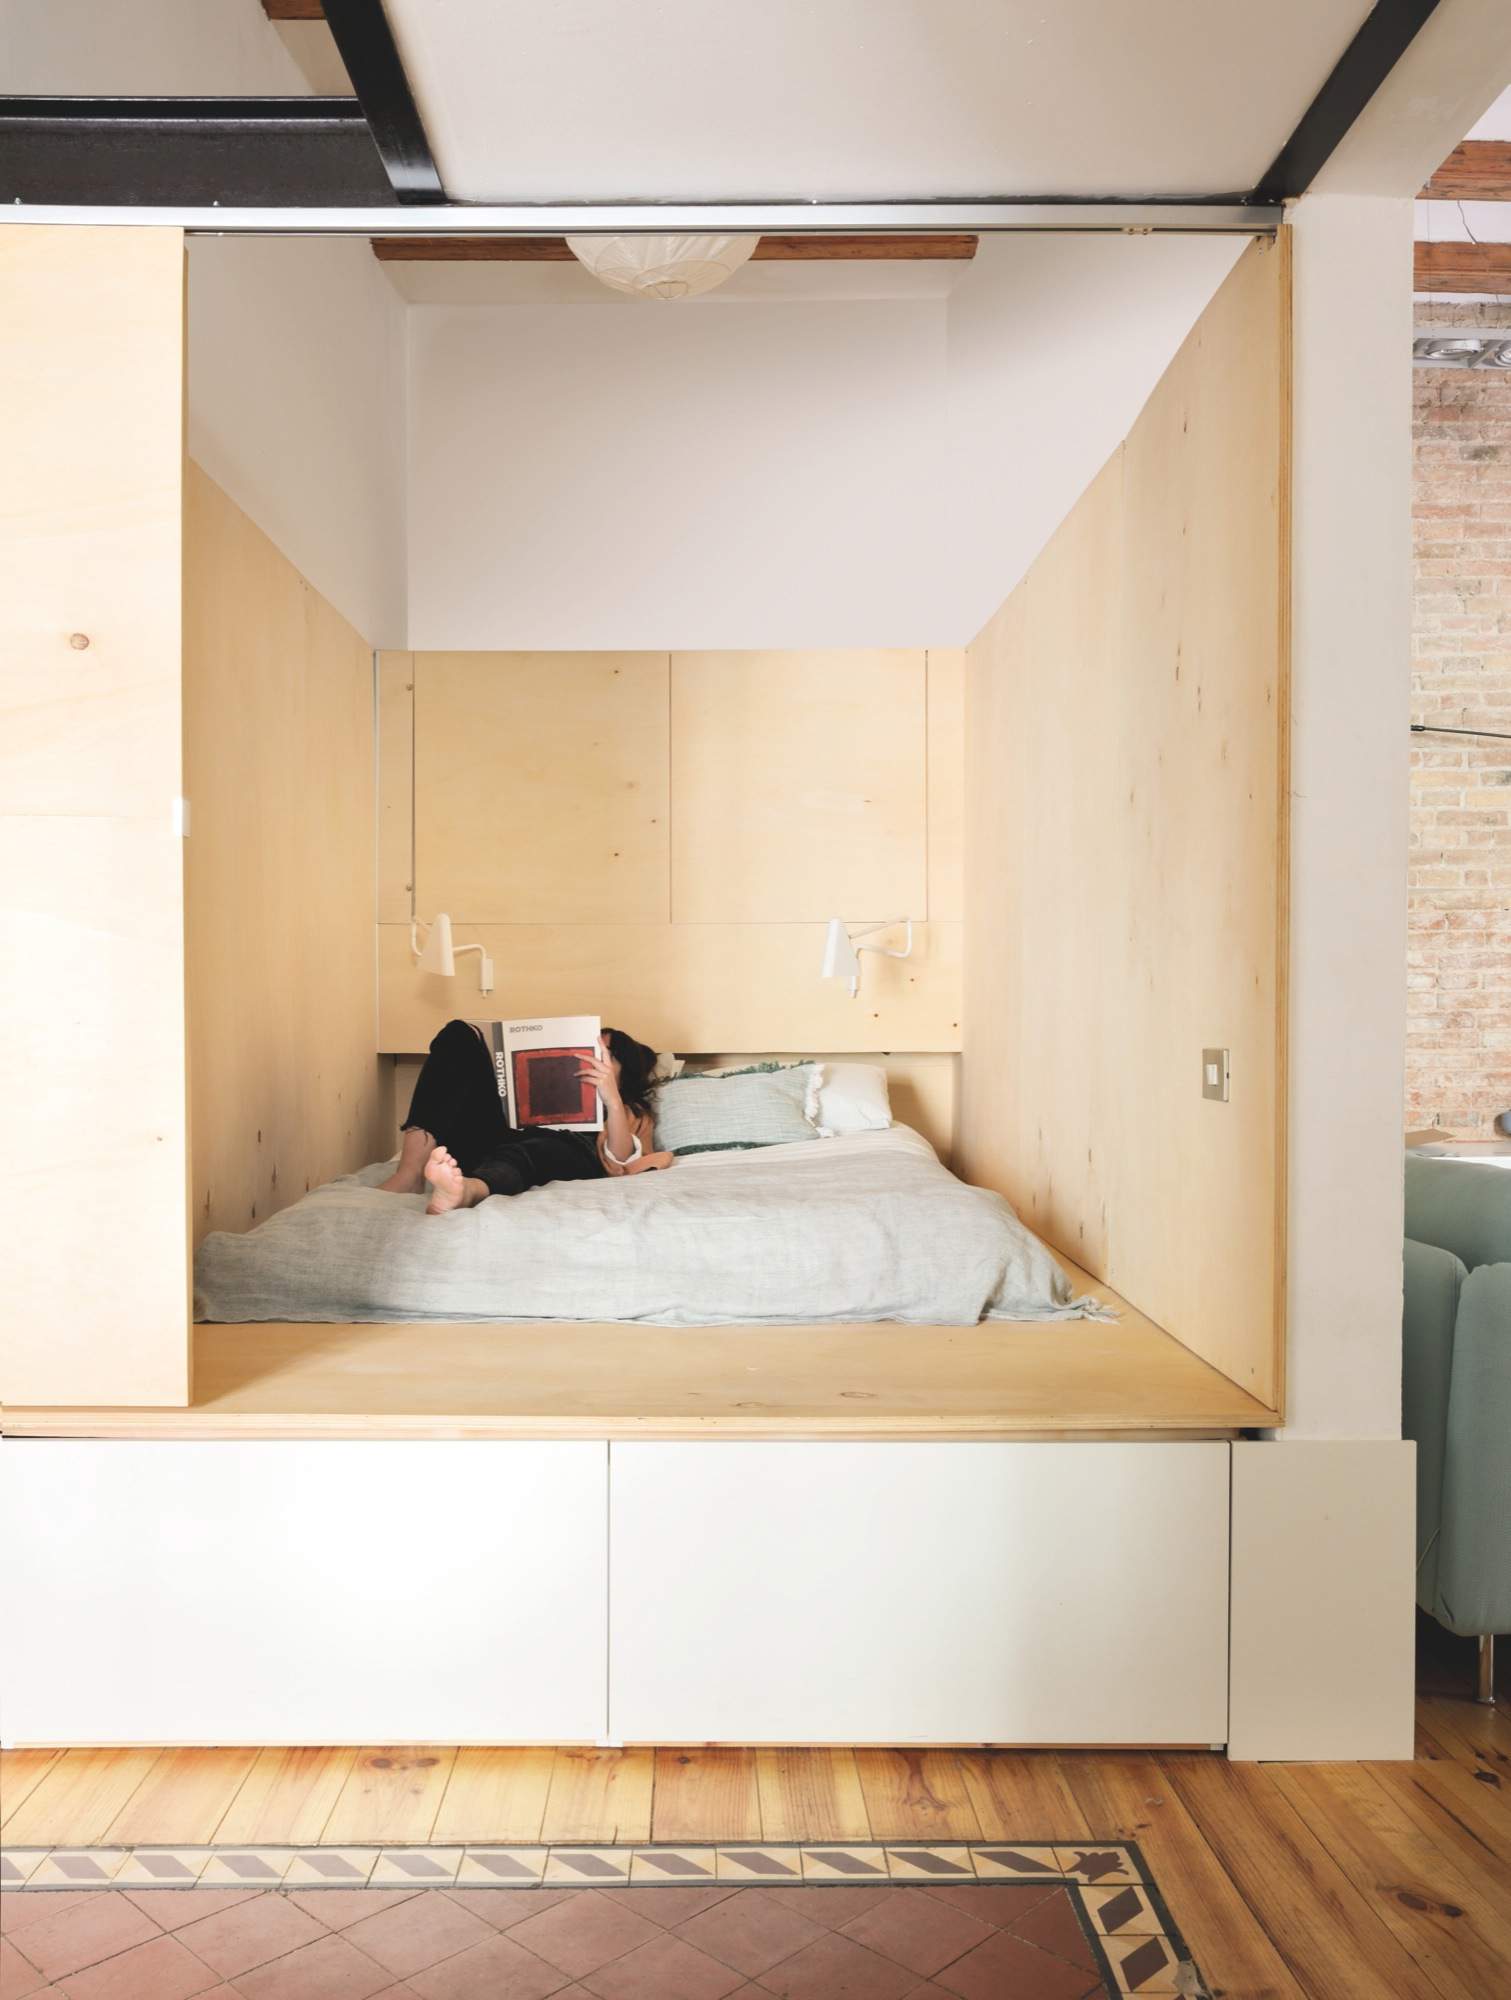 Dormitorio en forma de cubo de madera 436850 